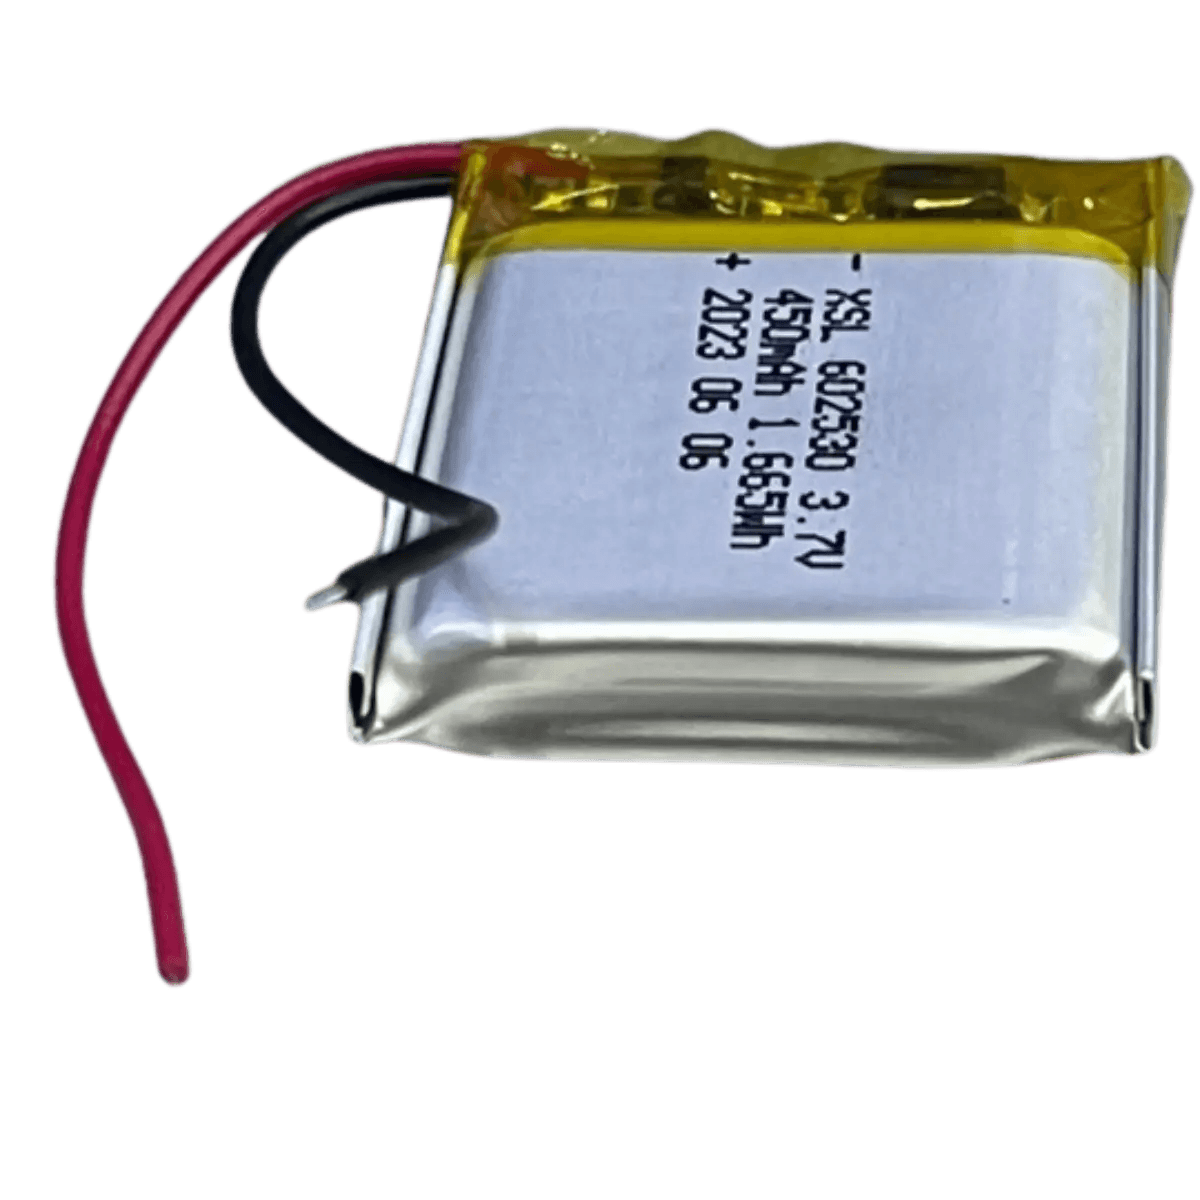 Batterie - Li-Po - 3.7V - 450mAh - 602530 avec sortie fils